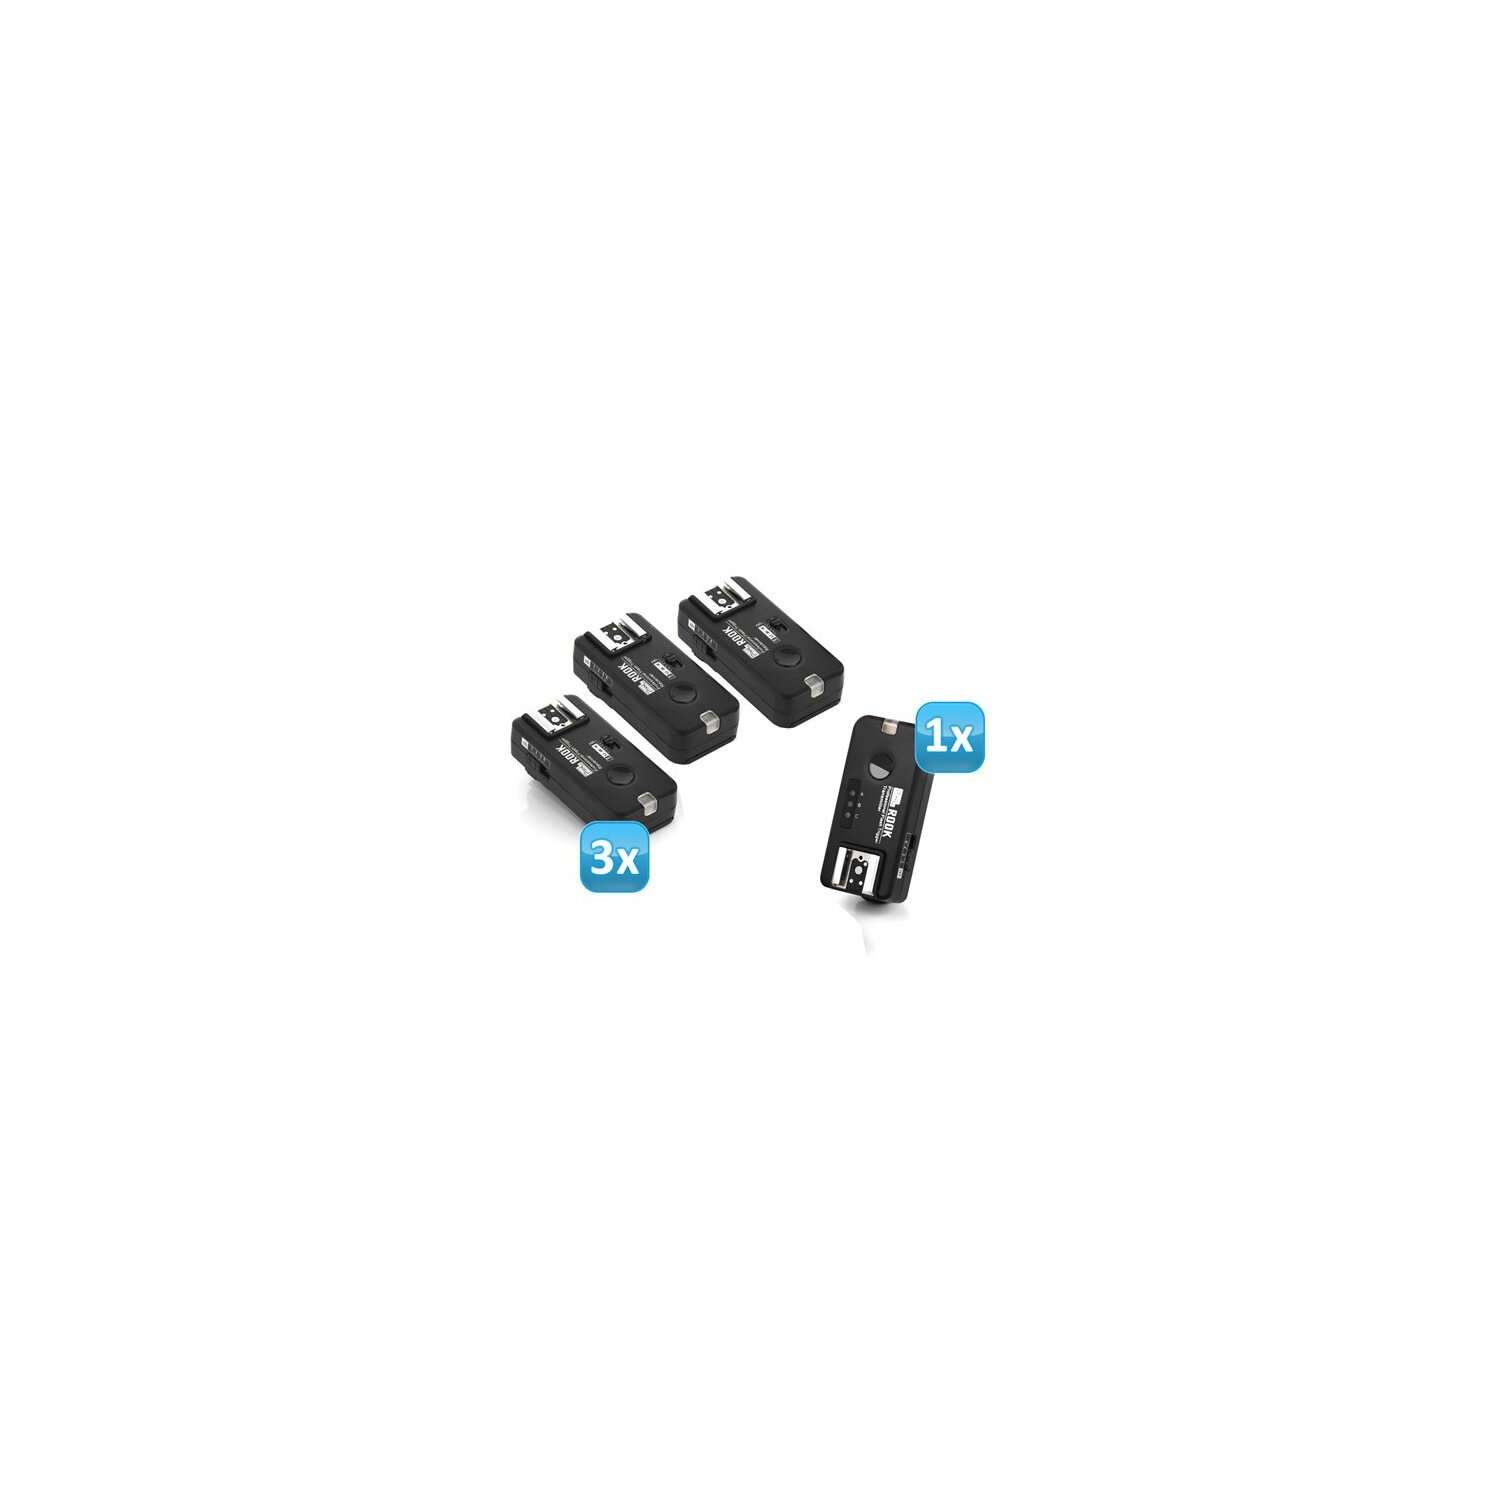 Pixel Rook Funk Blitzauslöser Set mit 3 Empfängern bis 200m kompatibel mit Nikon DSLR & Nikon TTL Blitzgeräte – Gruppierung & Wake-Up Funktion